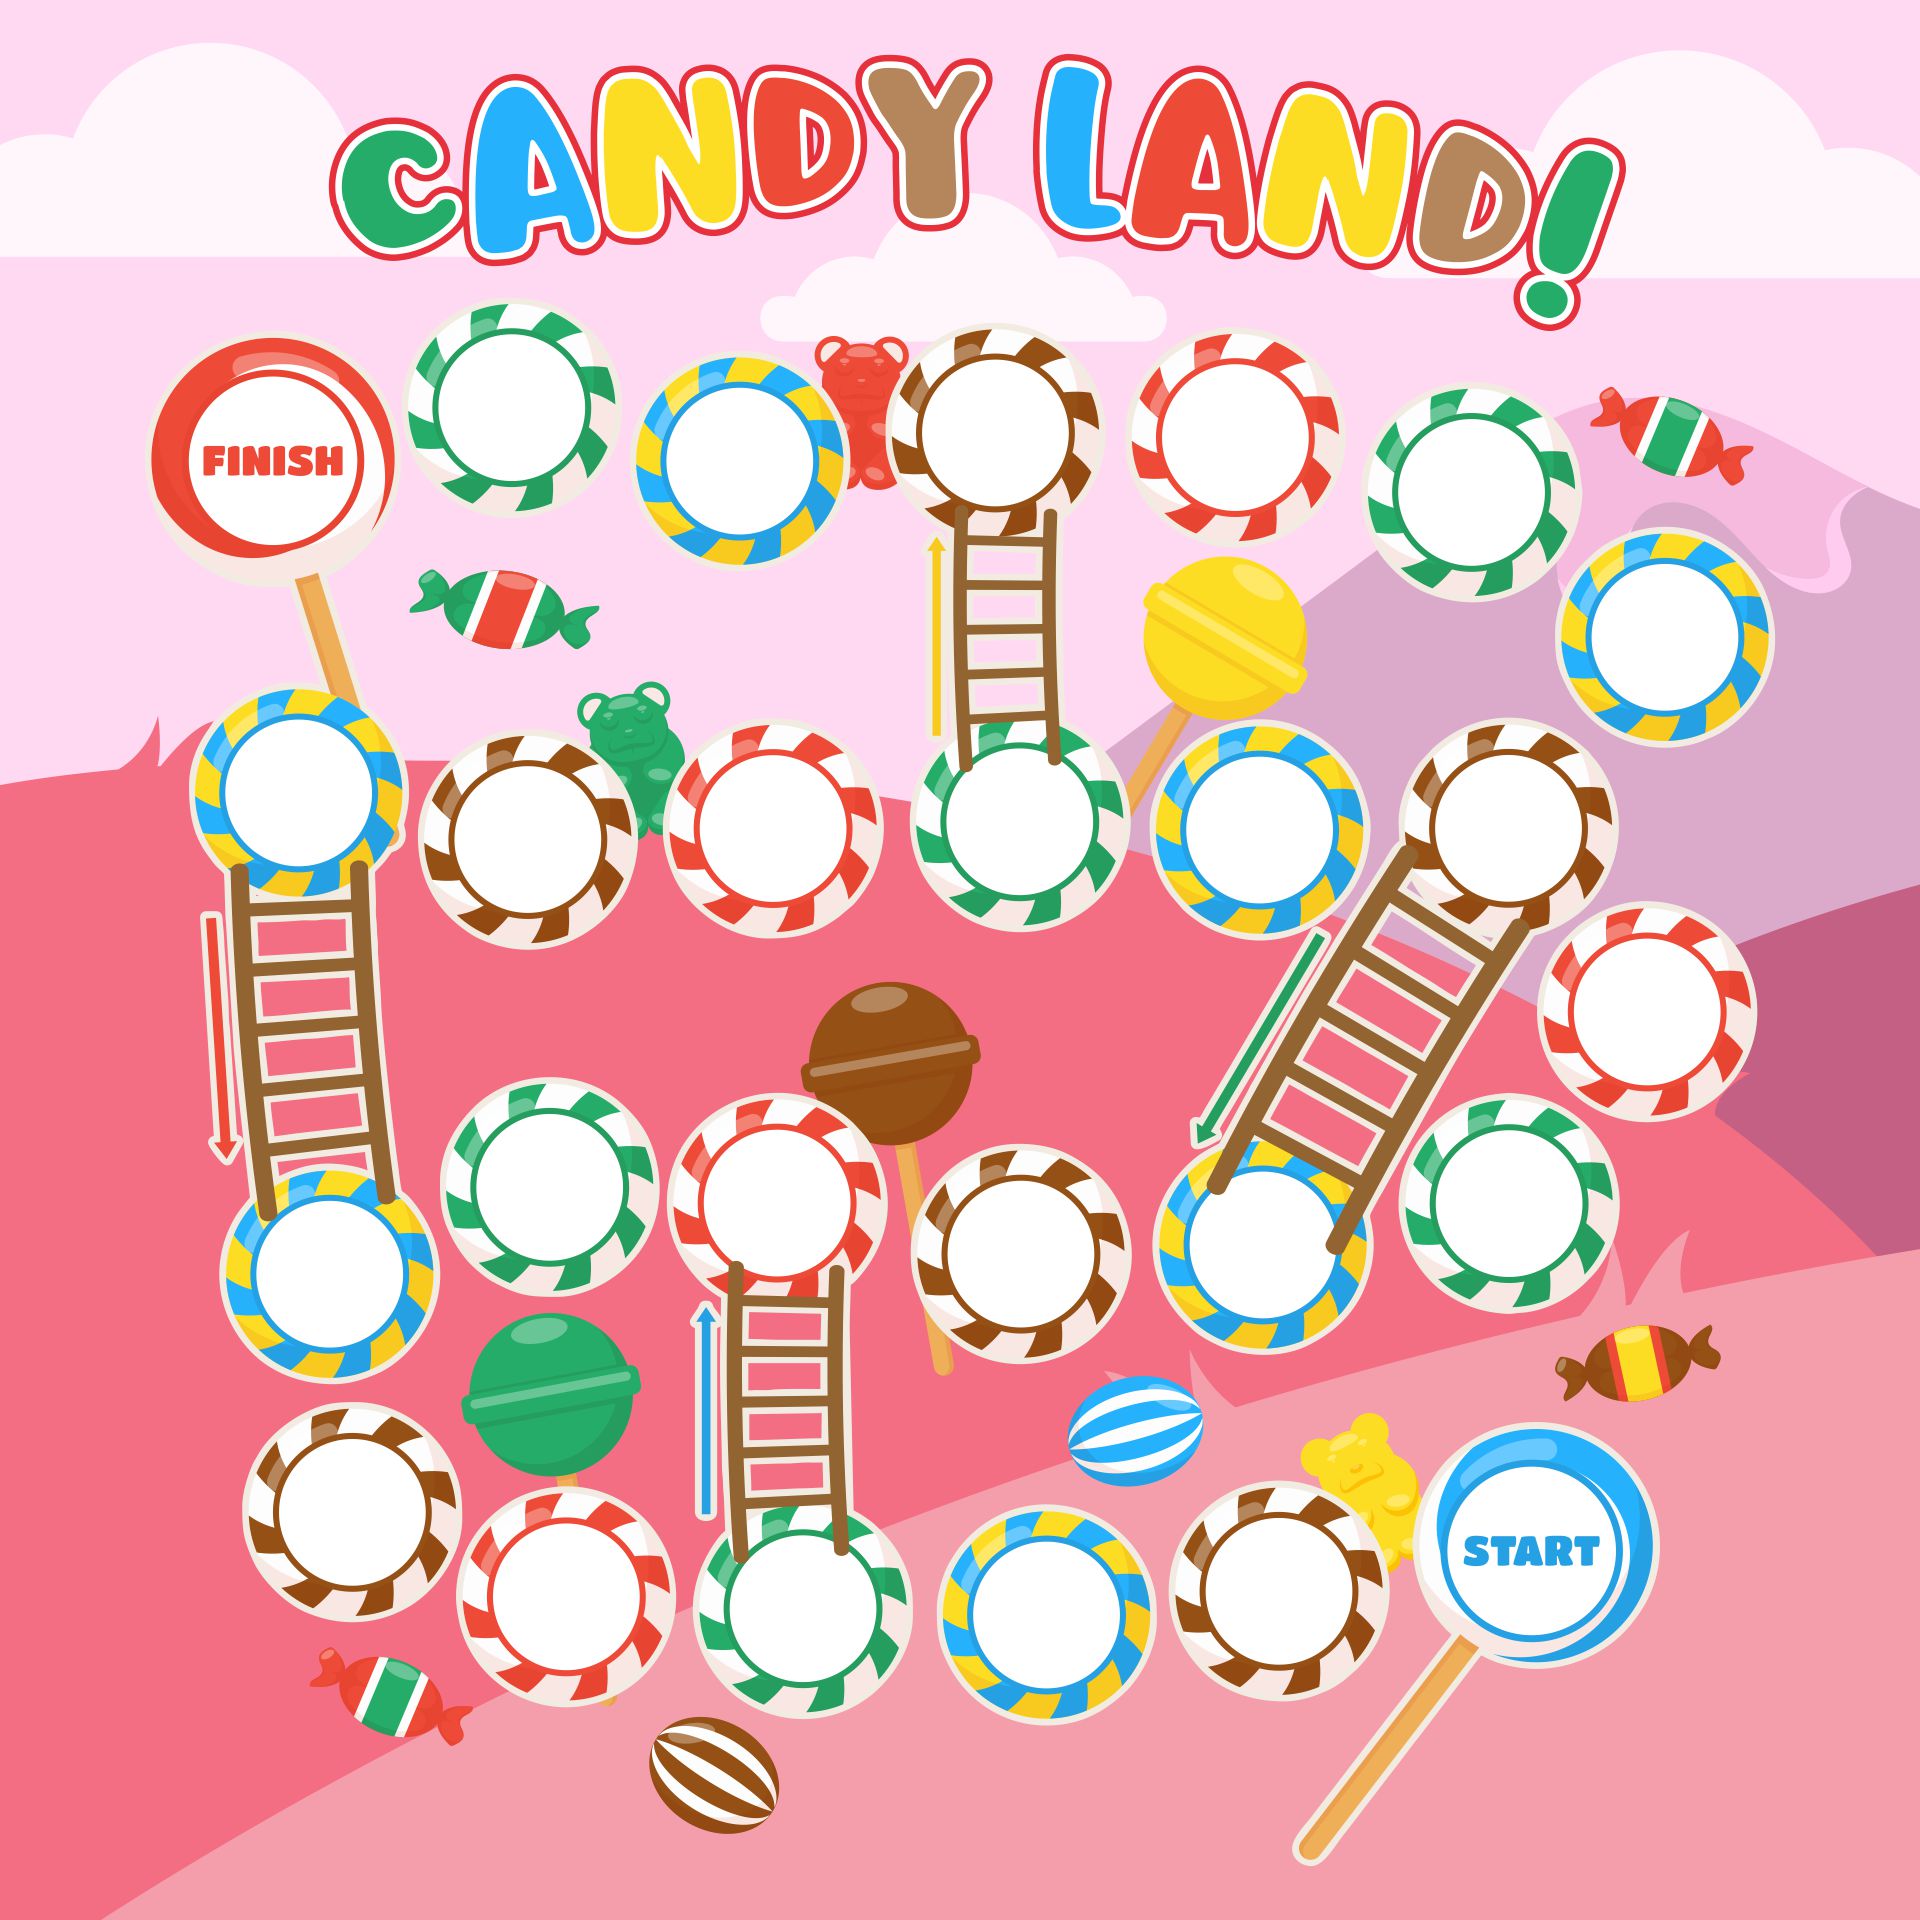 4 Best Images of Printable Candyland Board Game - Candyland Game Board